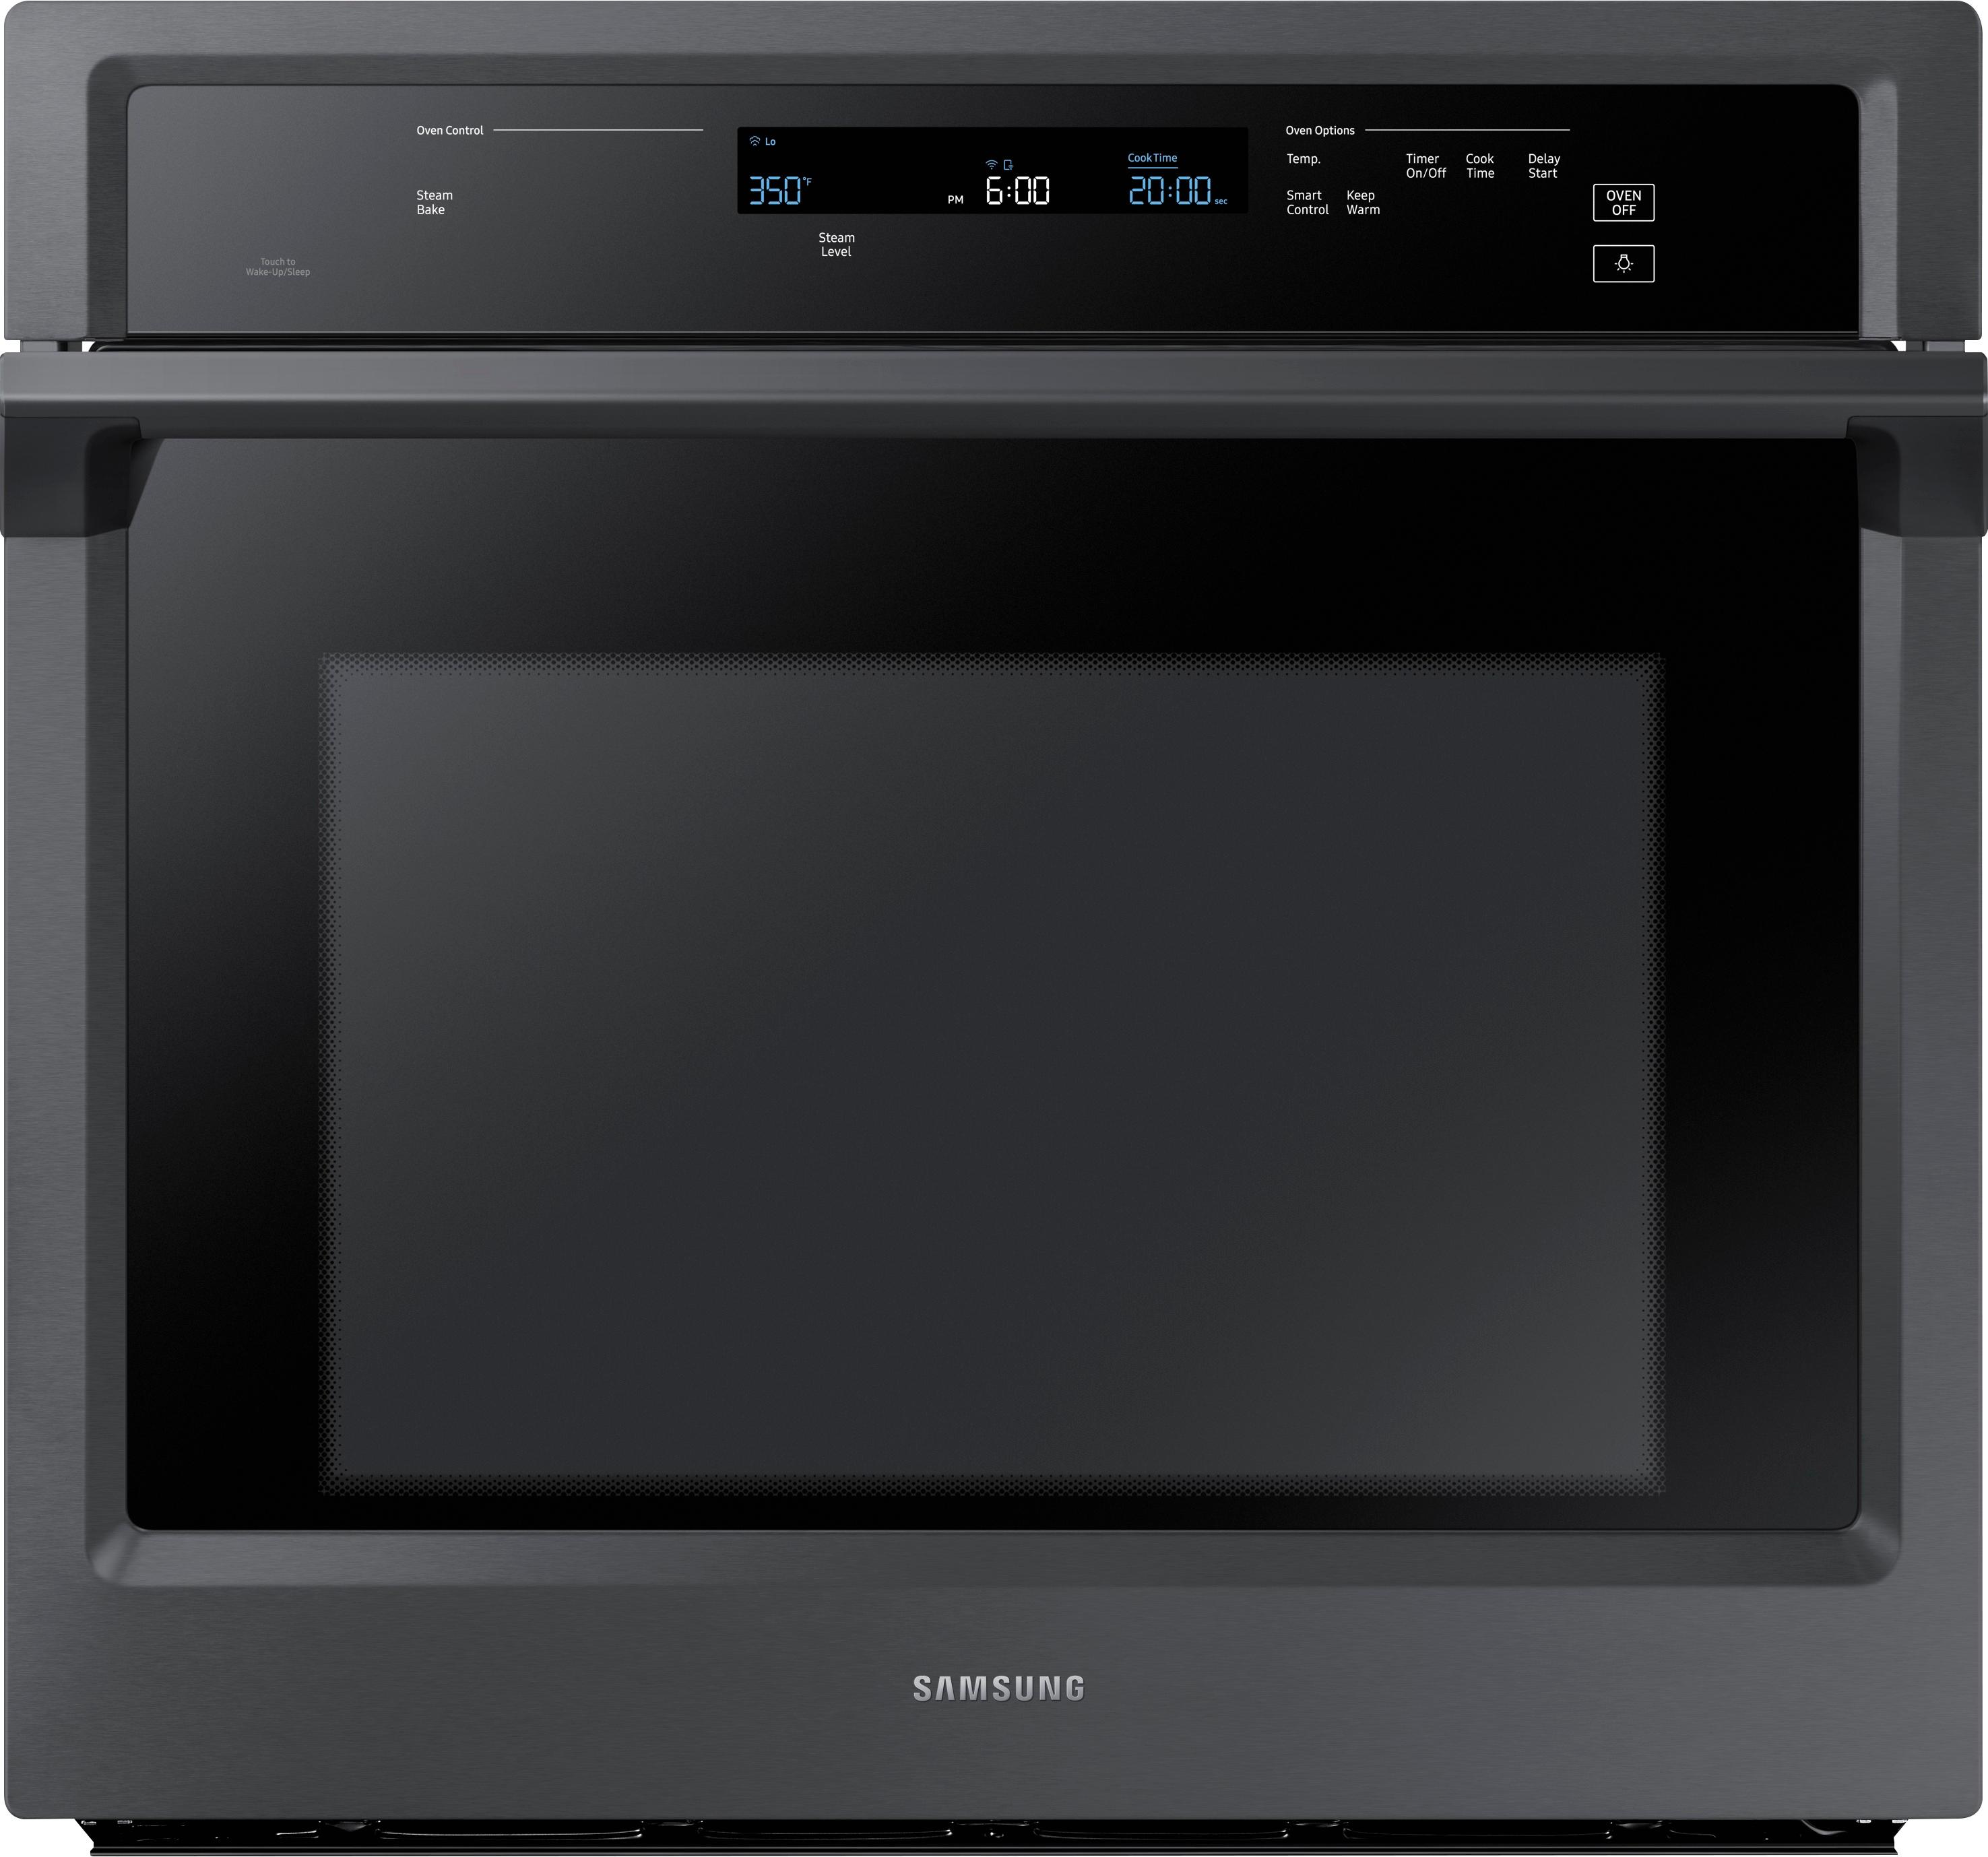 Samsung - 30" Single Wall Oven - Fingerprint Resistant Black Stainless Steel